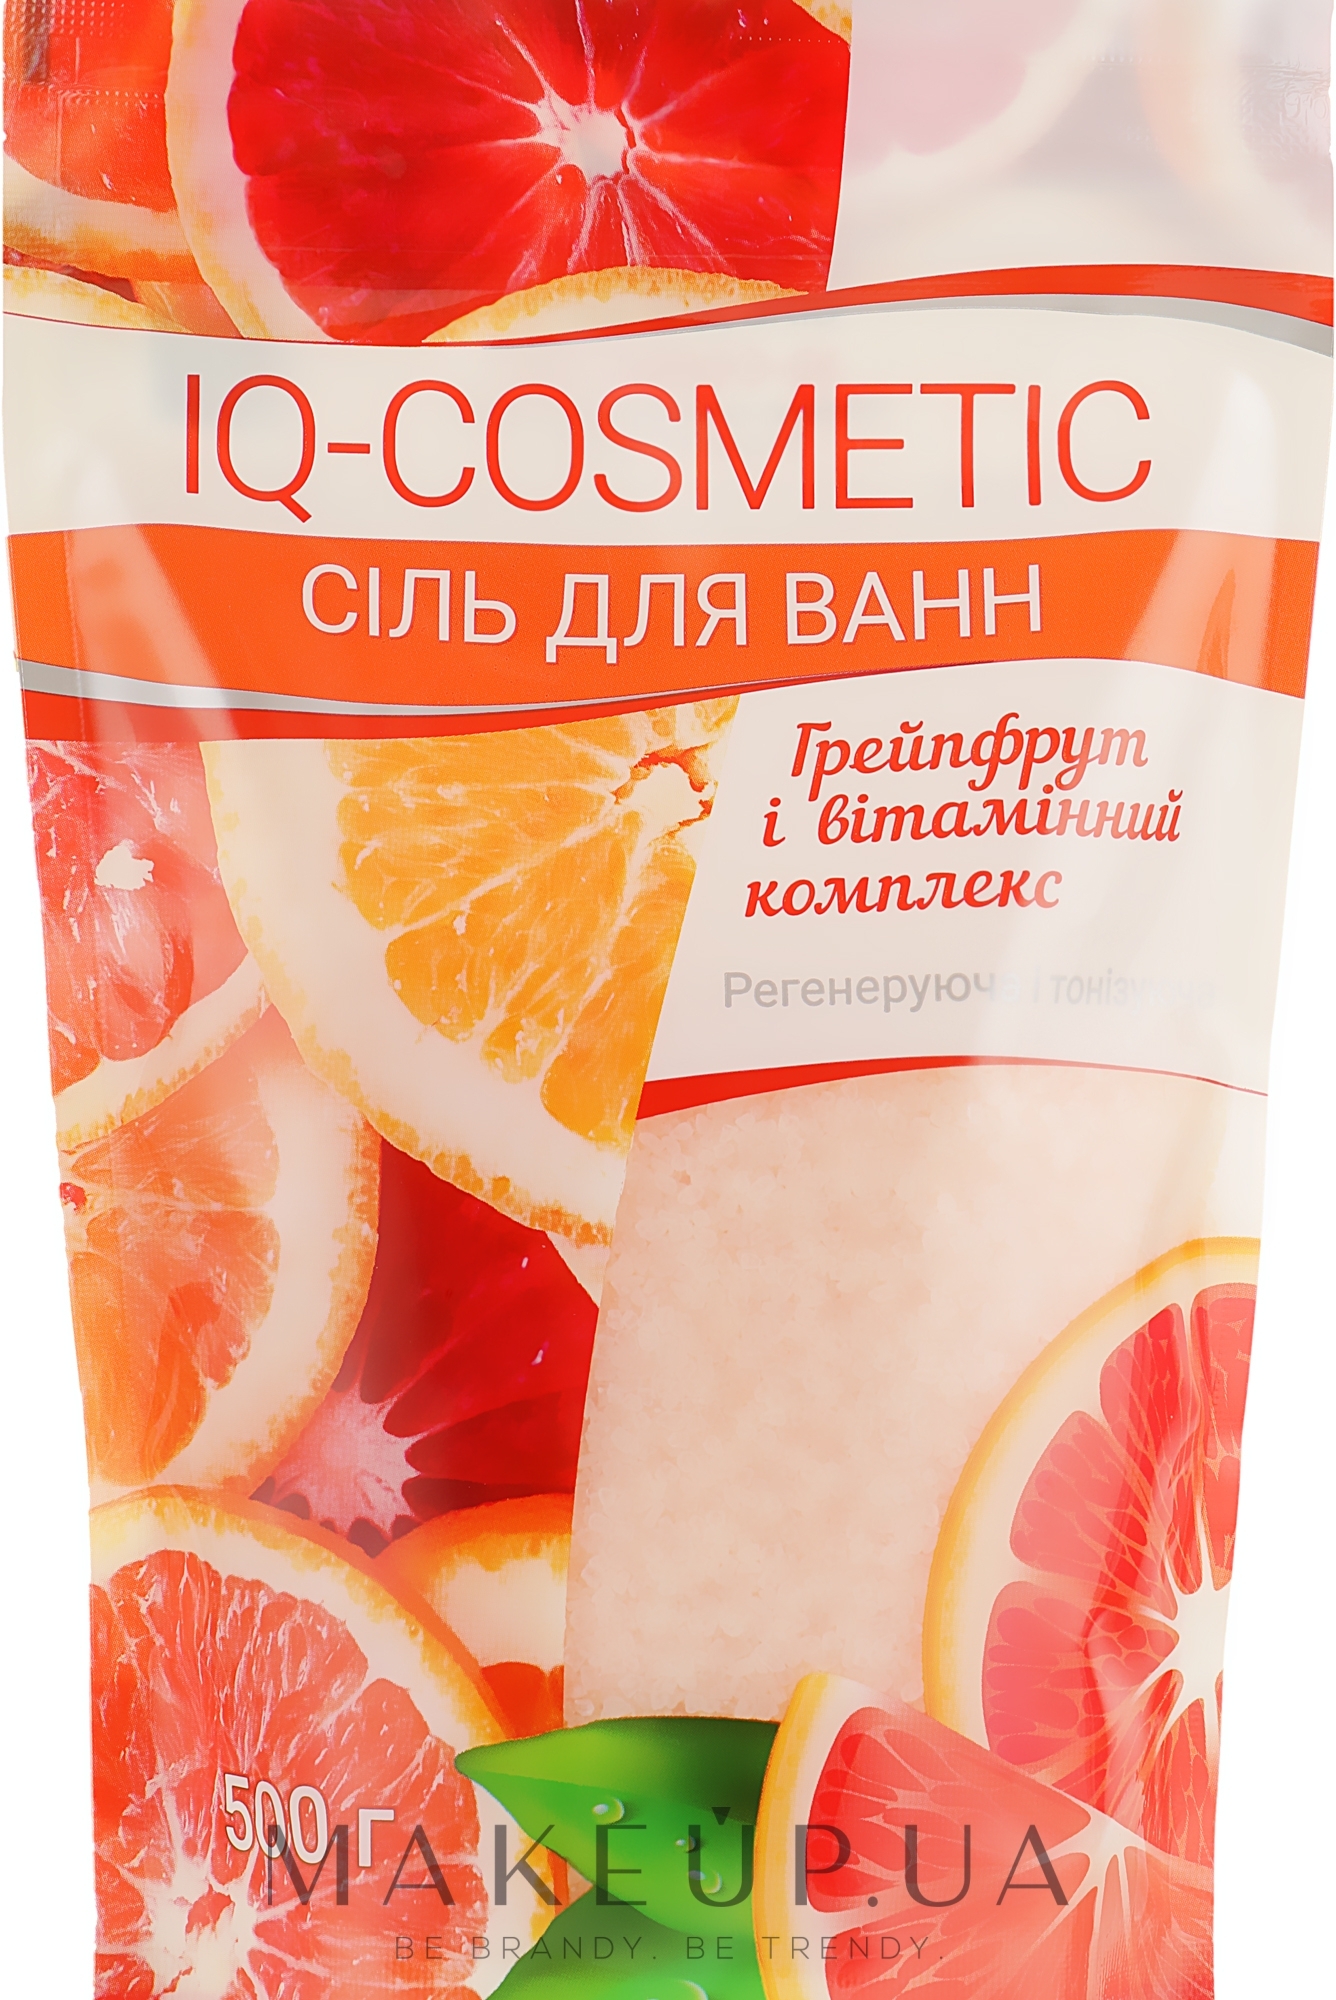 Соль для ванны "Грейпфрут и витаминный комплекс" - IQ-Cosmetic — фото 500g